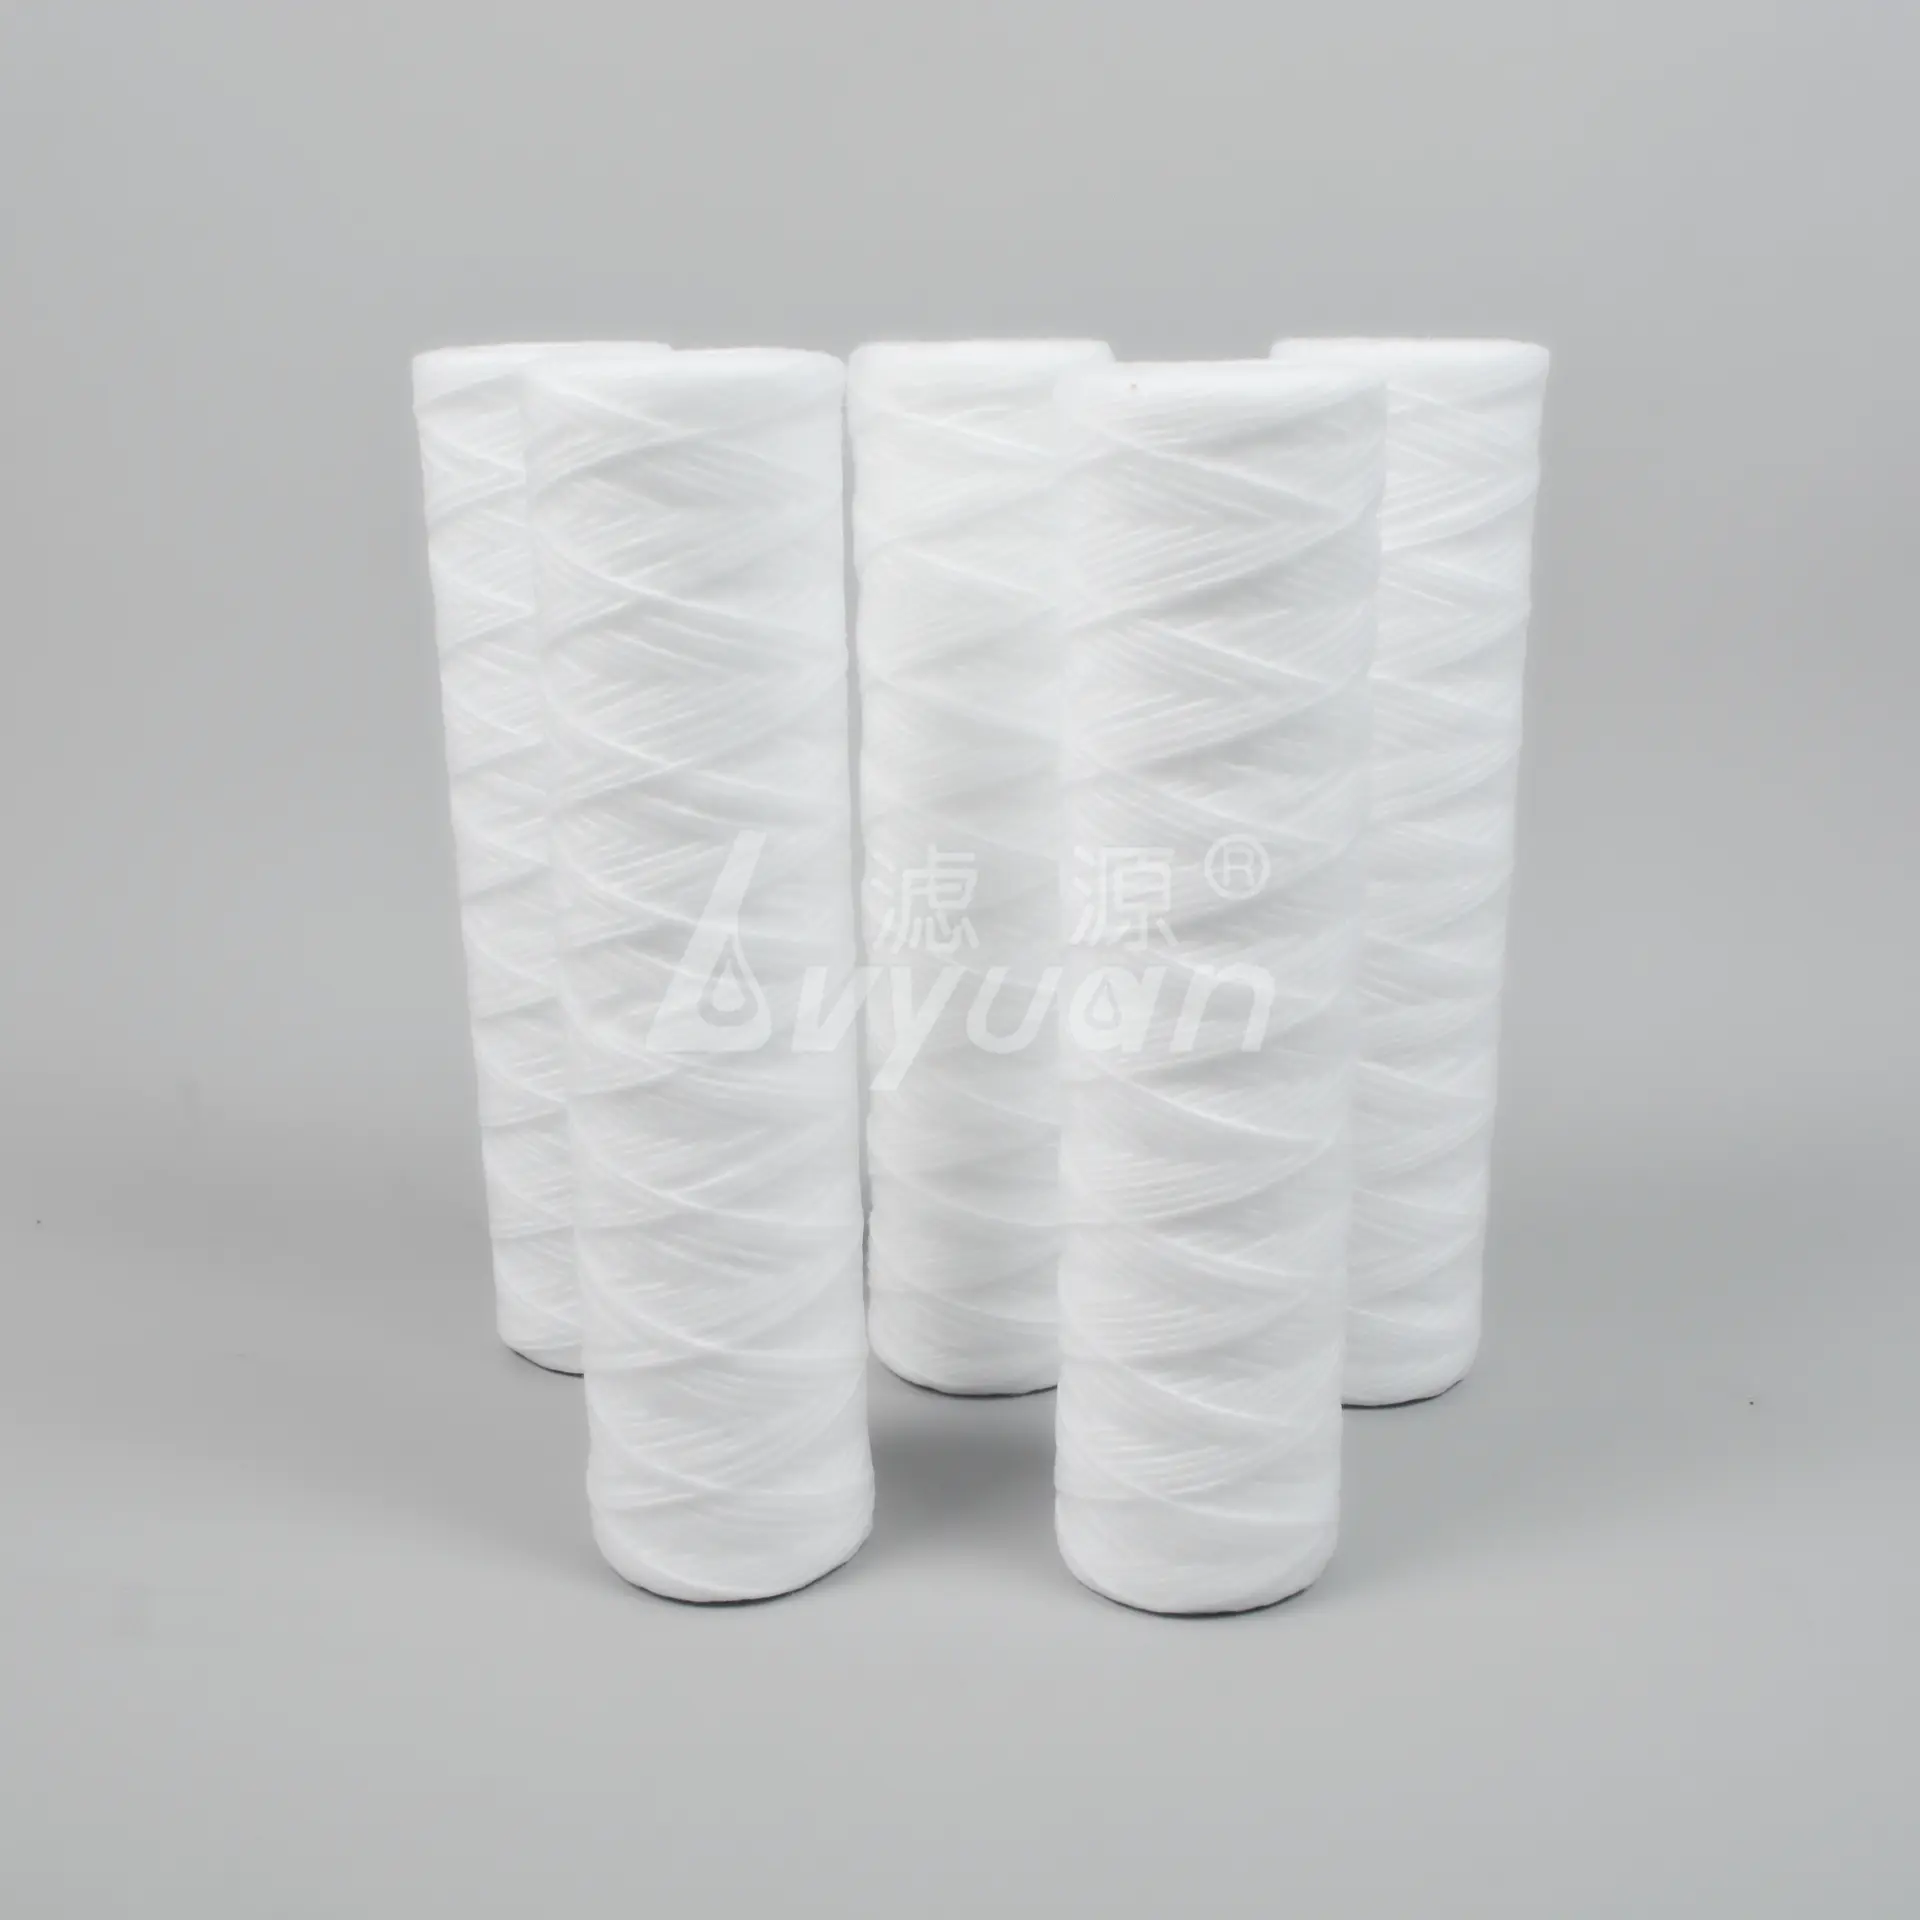 1box/50pcs 1 3 5 10 micron 10 inch spun polypropylene filter cartridge/pp string wound yarn filter cartridge for water filter